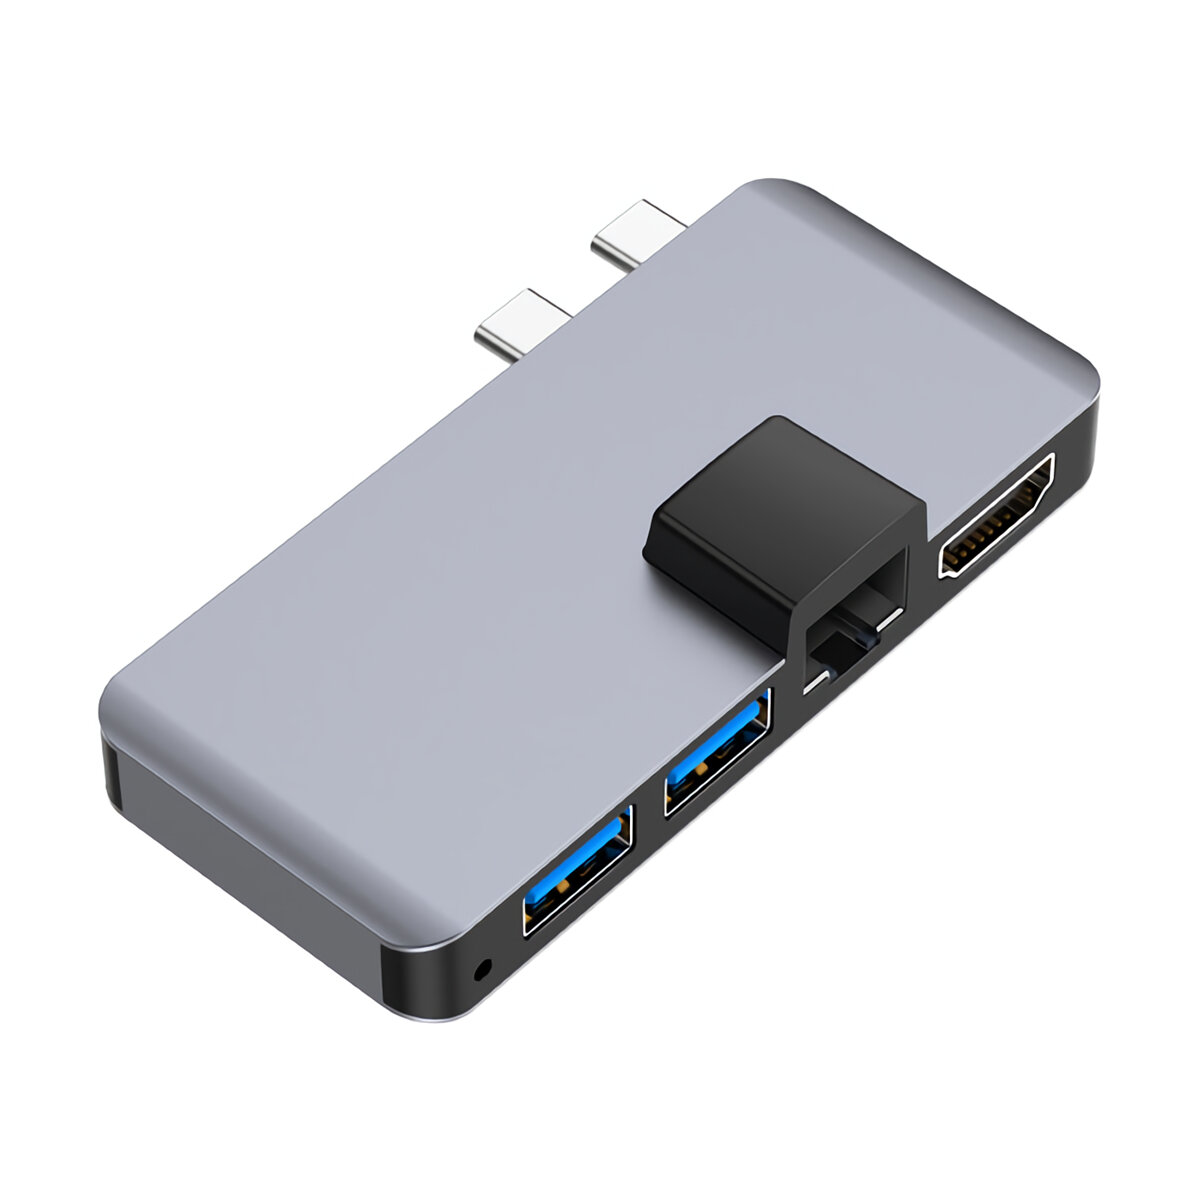 

Rocketek USB 3.0 Hub Type-C 4K HD Rj45 Gigabit Ethernet 1000Mbps Adapter TF/SD Card Reader PD for MacBook Pro/Air